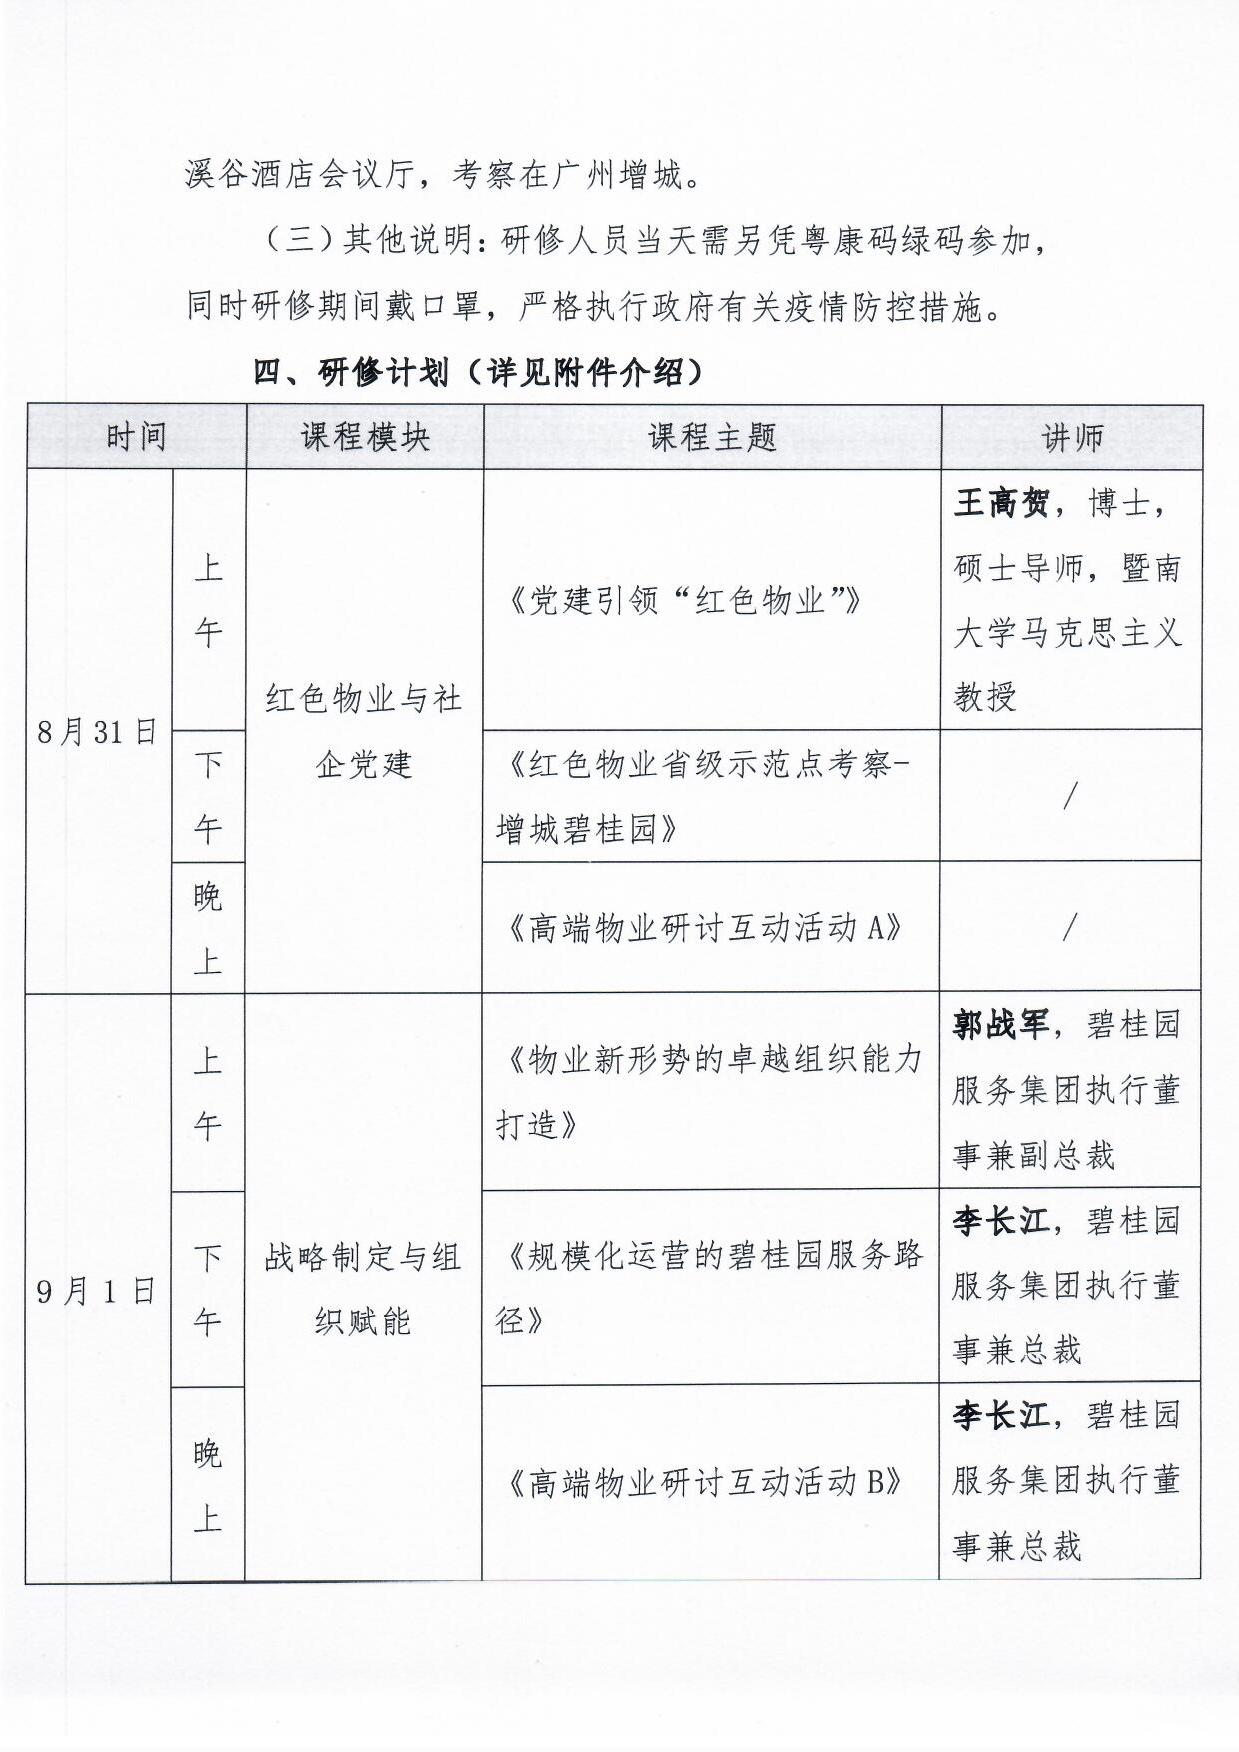 关于举办《物业总裁(惠州)研修营》的通知3.jpg